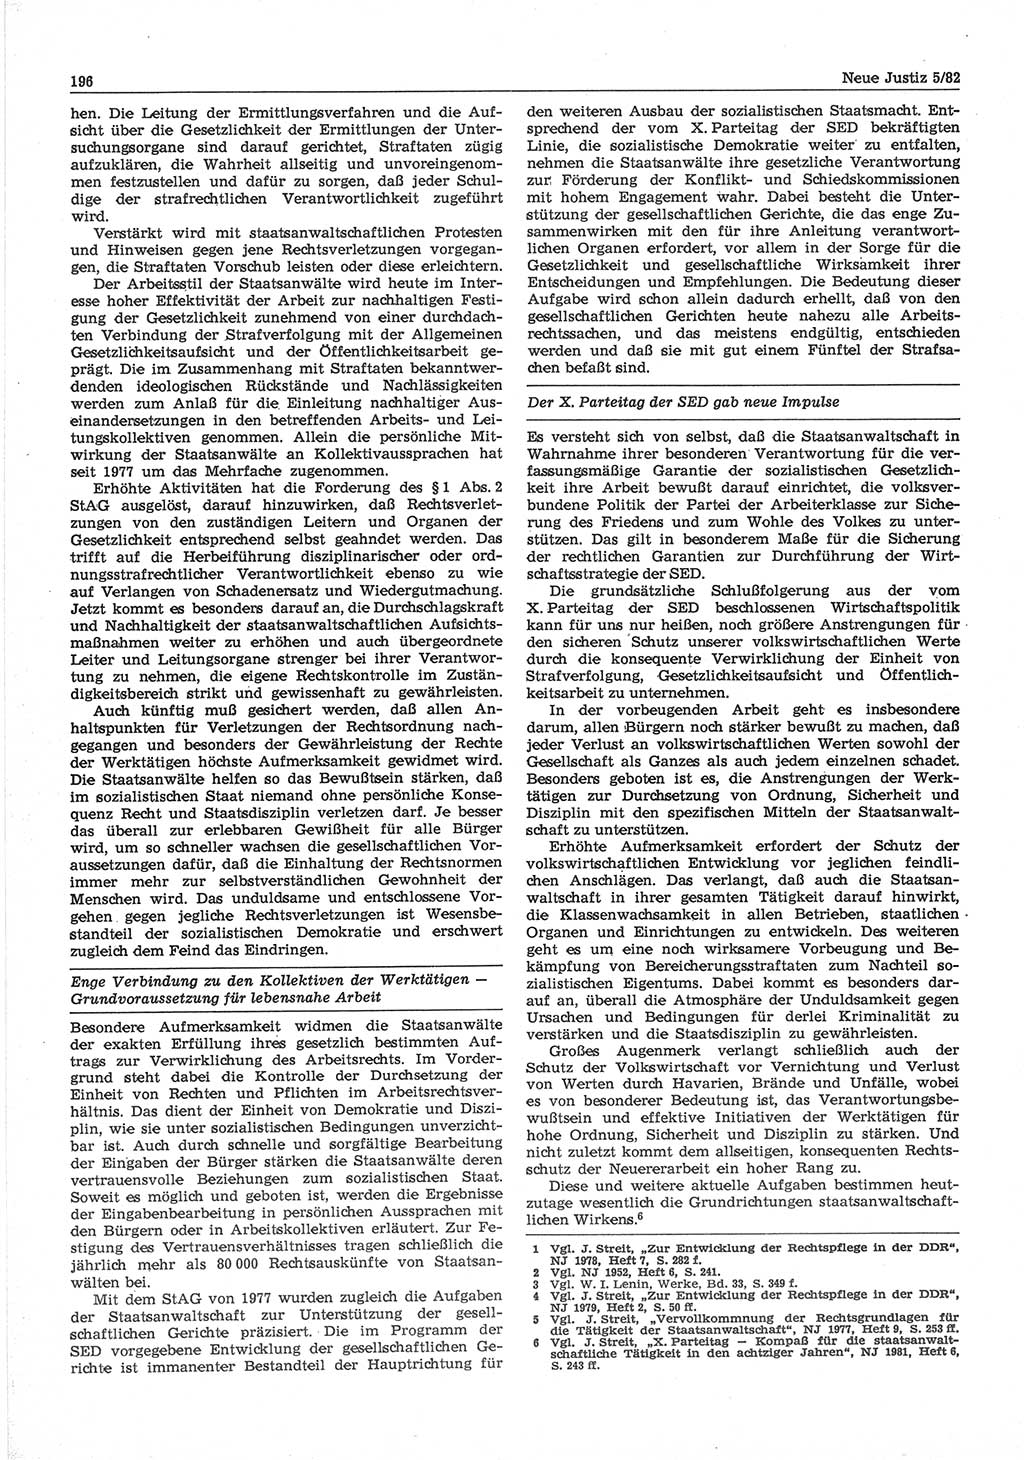 Neue Justiz (NJ), Zeitschrift für sozialistisches Recht und Gesetzlichkeit [Deutsche Demokratische Republik (DDR)], 36. Jahrgang 1982, Seite 196 (NJ DDR 1982, S. 196)